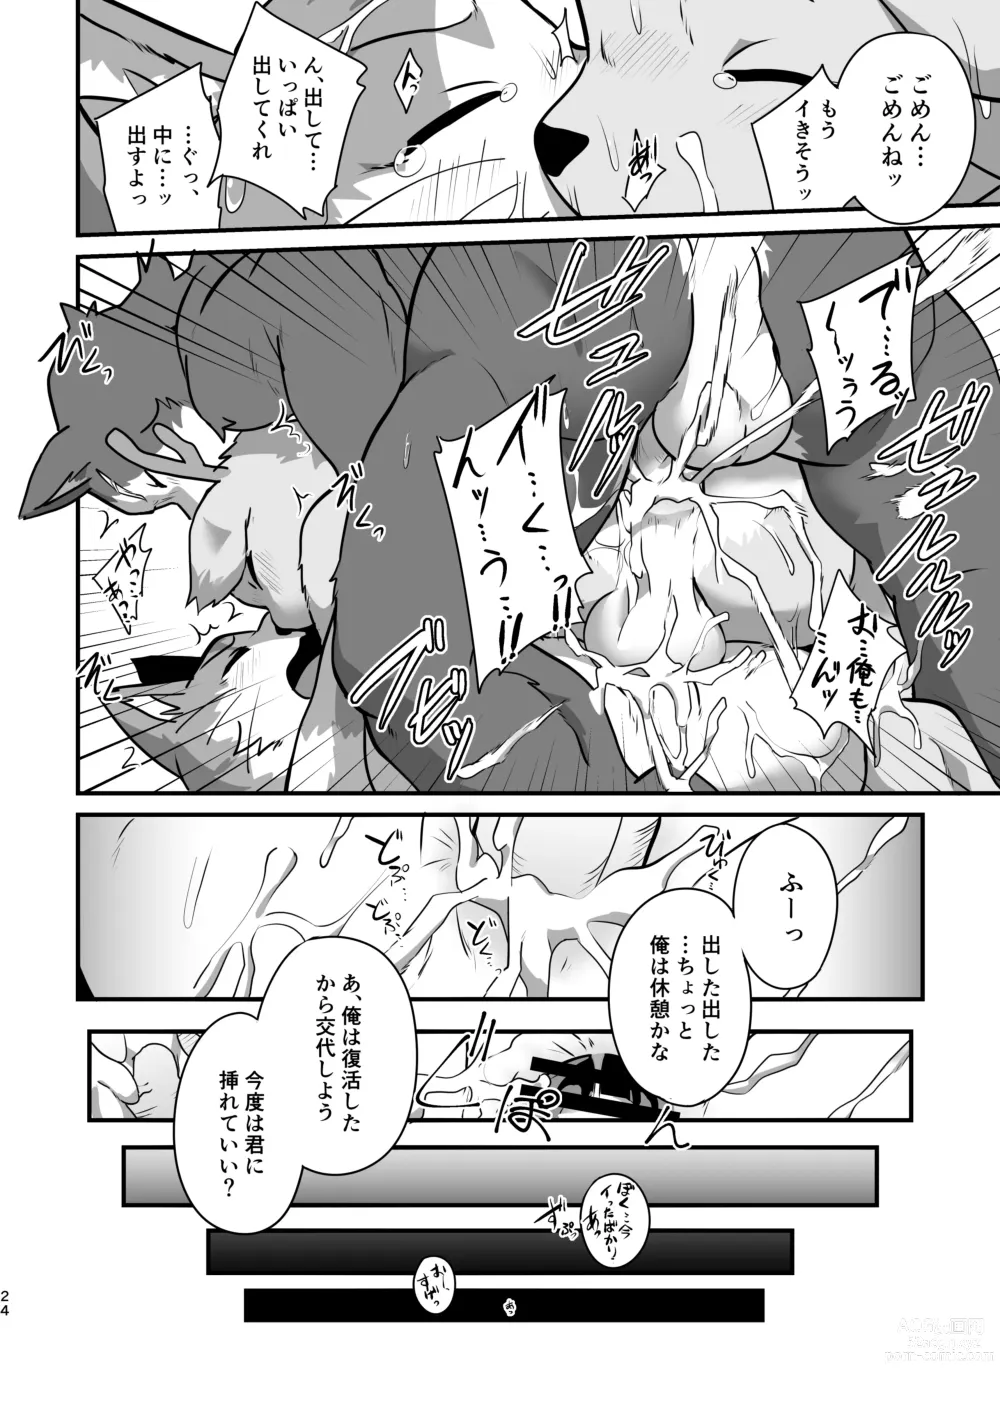 Page 23 of doujinshi Boku-Tachi Futari wa Neko shitai!